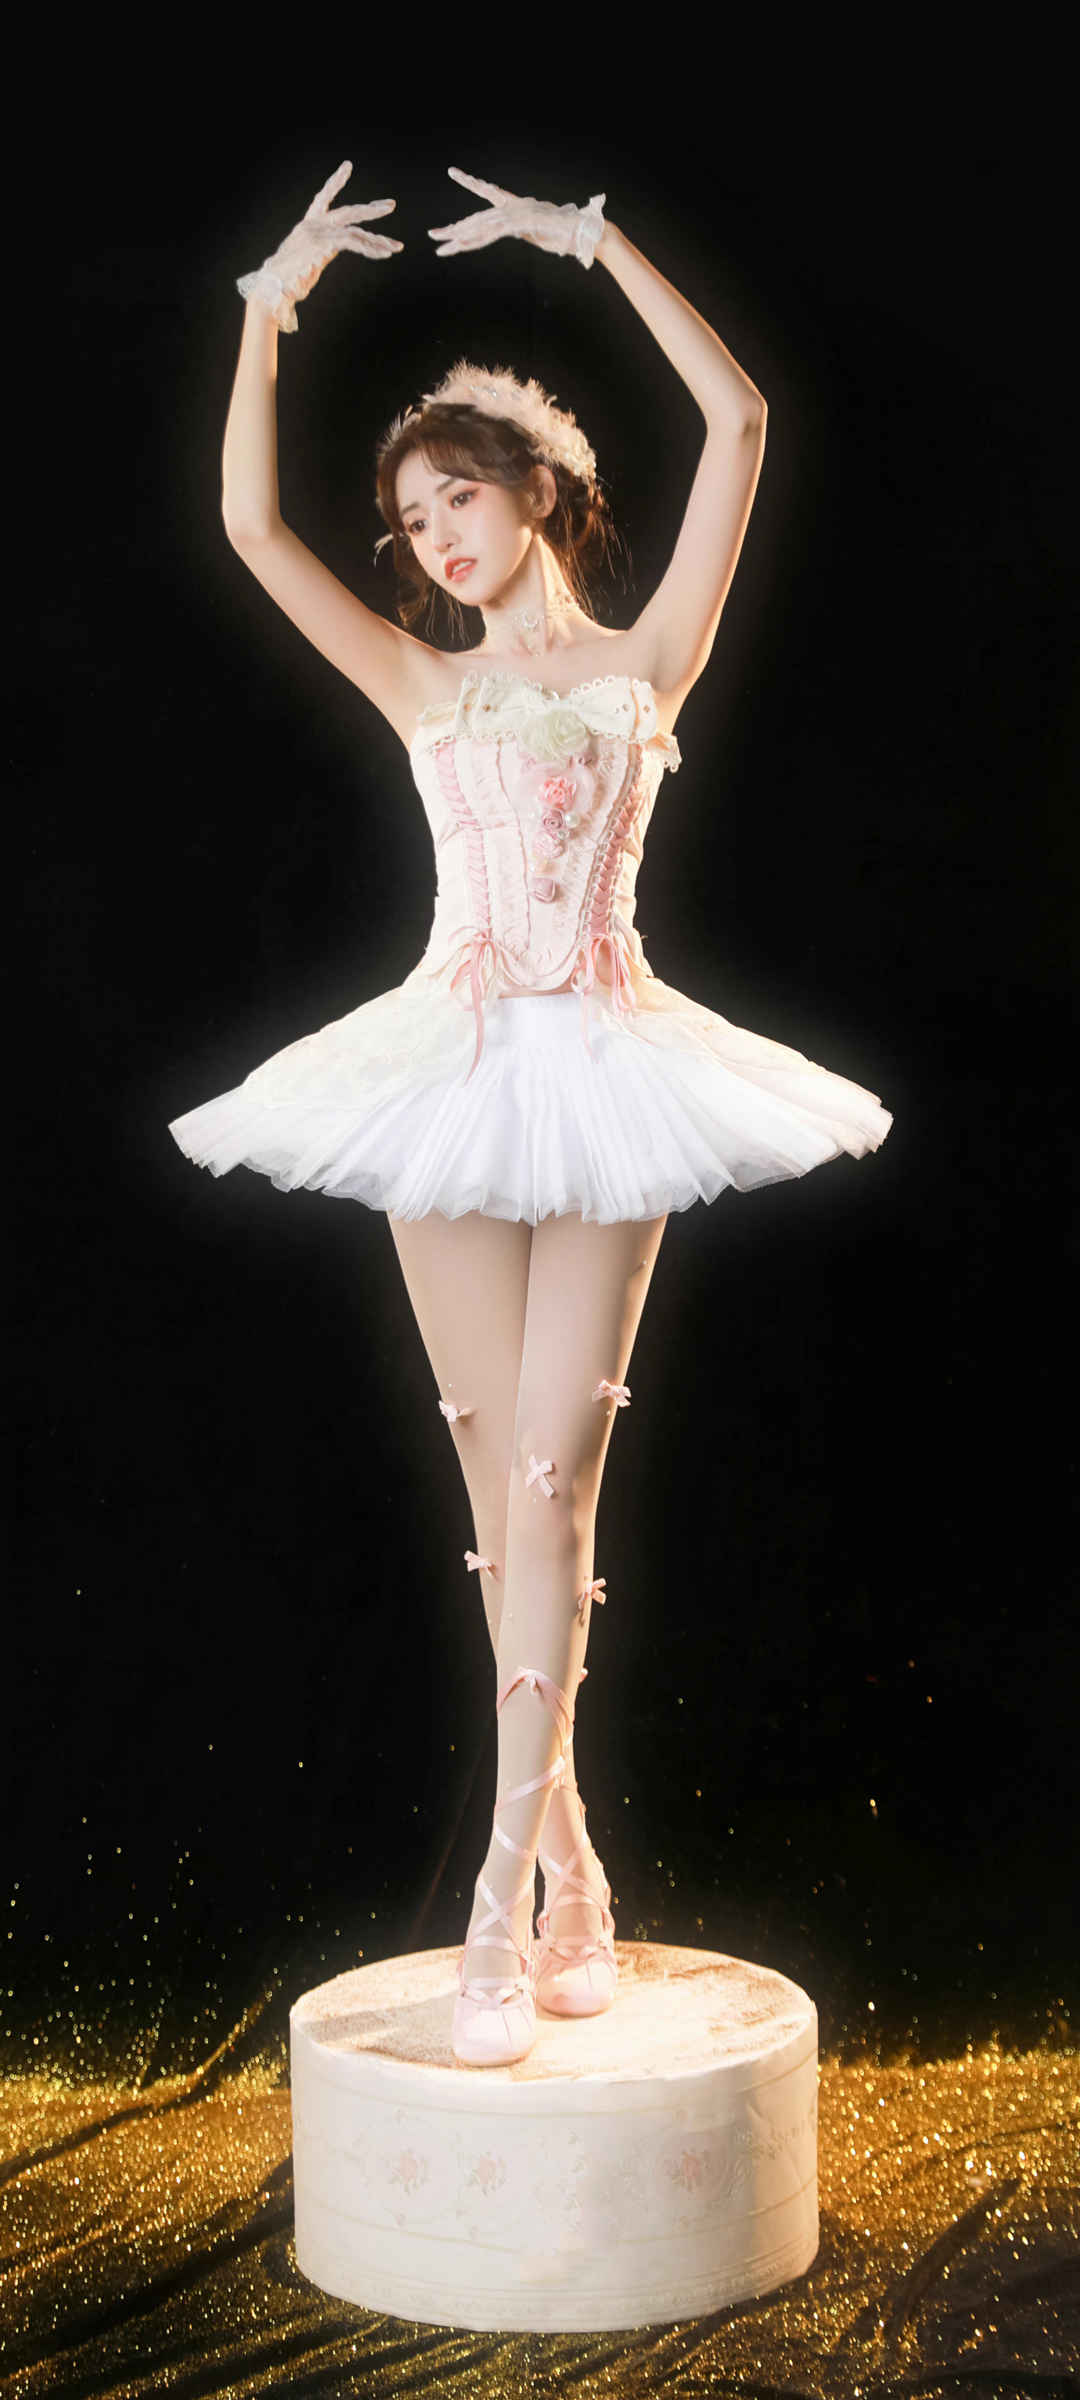 好看身材美腿美女 唯美 芭蕾舞 手机壁纸